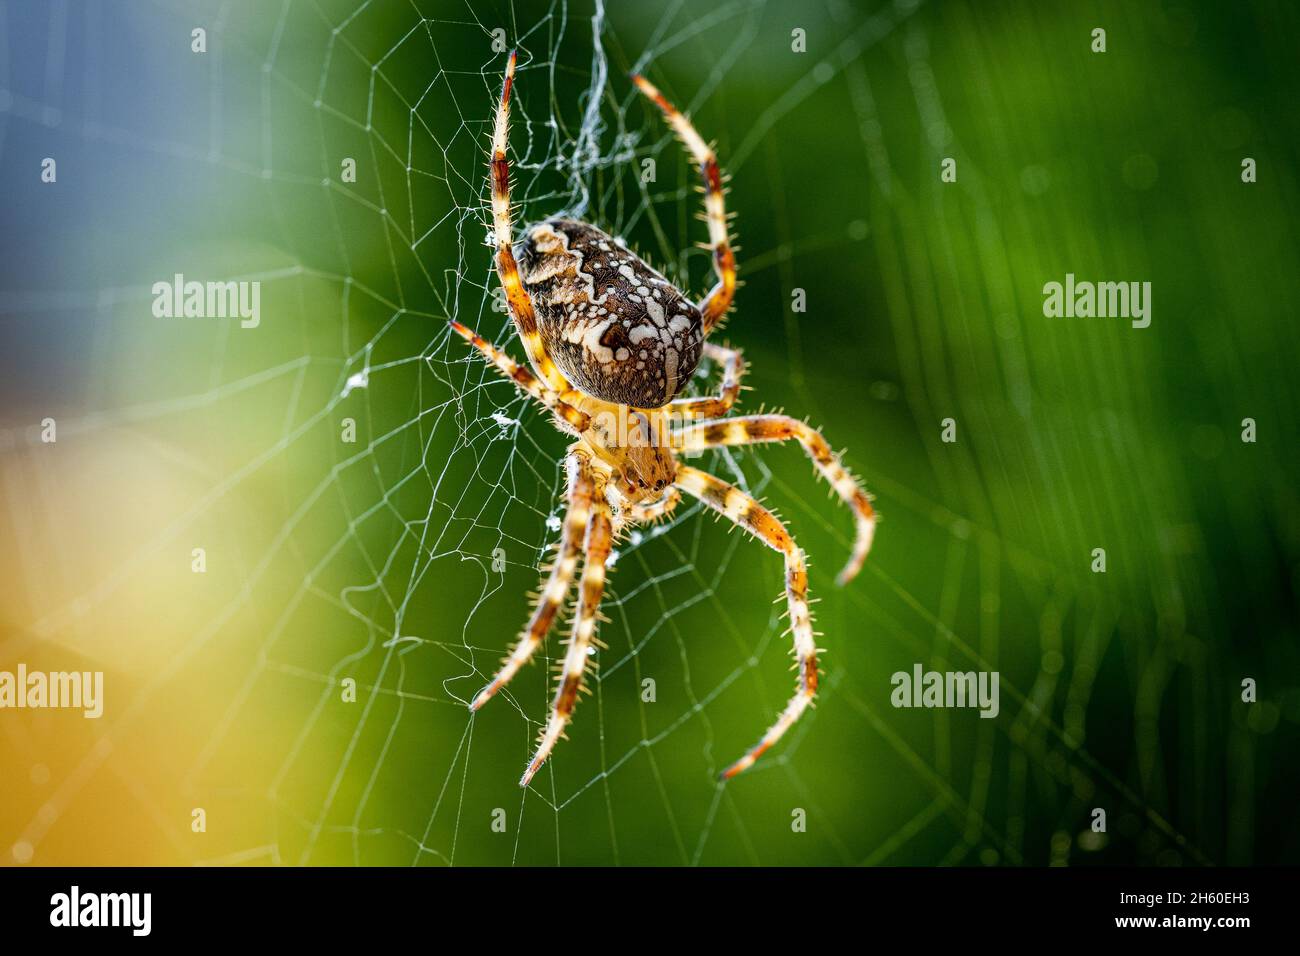 Gros plan d'une araignée de jardin européenne (araignée croisée, Araneus diadematus) assise dans une toile d'araignée Banque D'Images